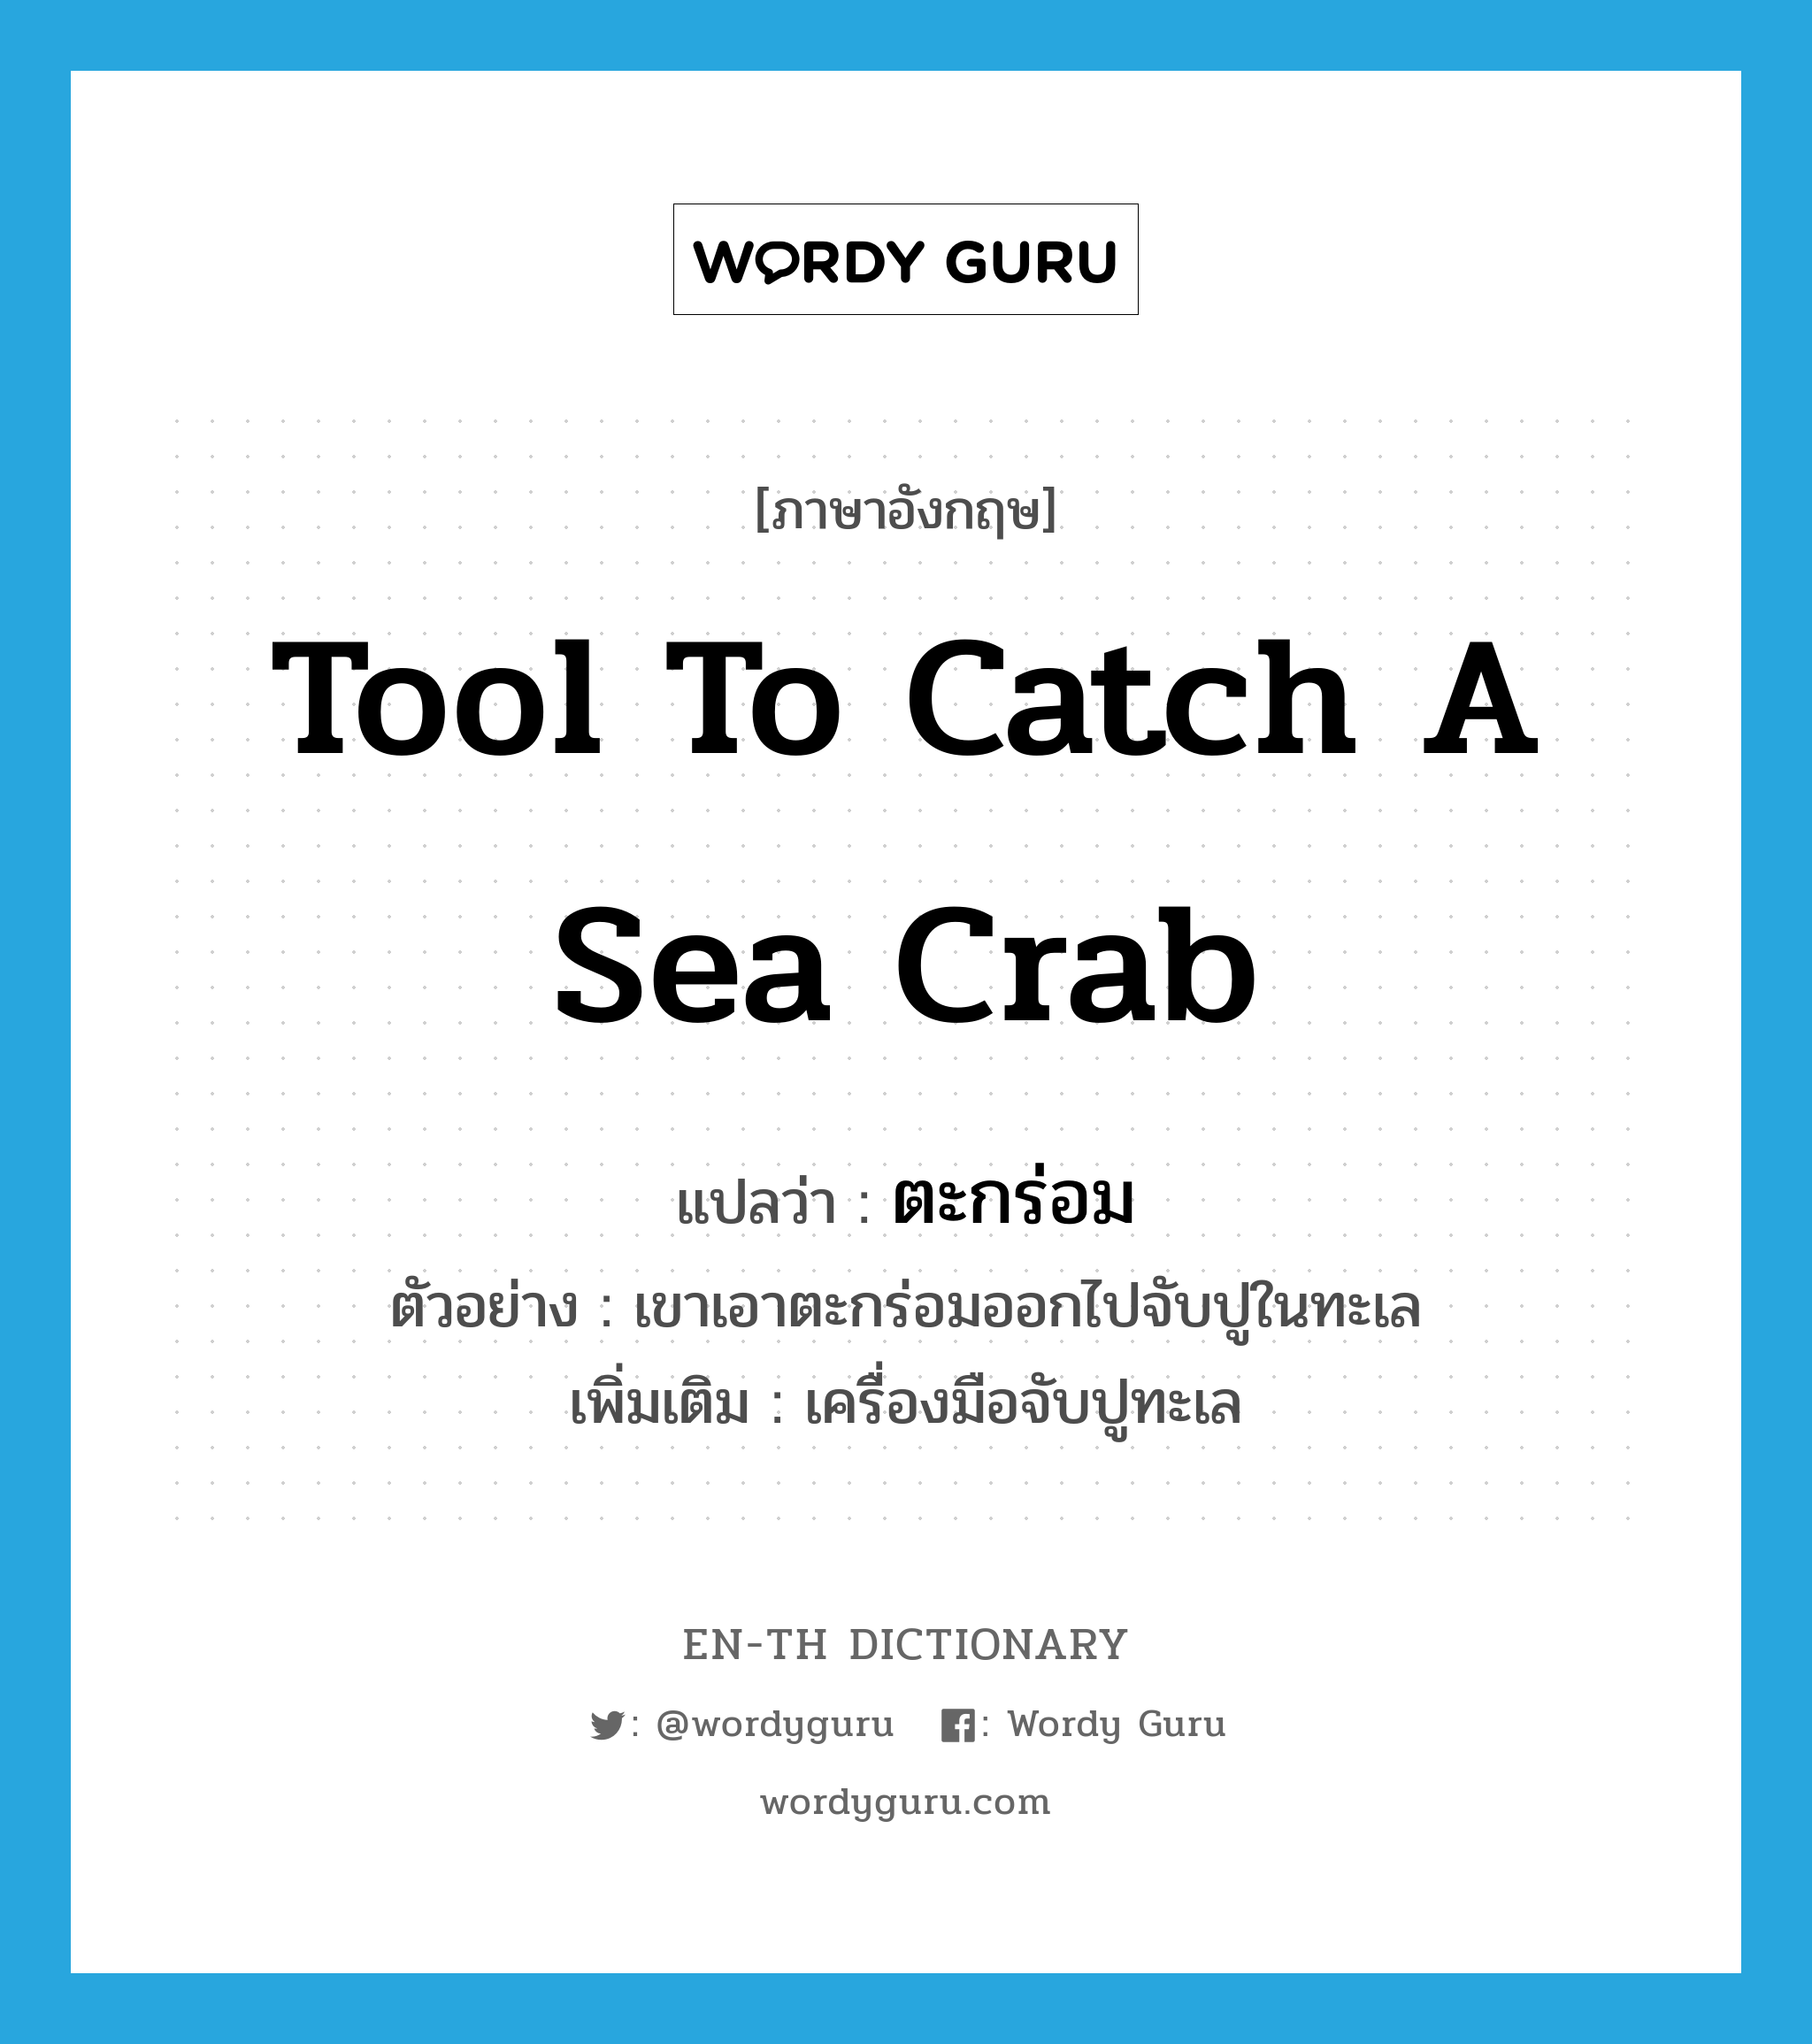 ตะกร่อม ภาษาอังกฤษ?, คำศัพท์ภาษาอังกฤษ ตะกร่อม แปลว่า tool to catch a sea crab ประเภท N ตัวอย่าง เขาเอาตะกร่อมออกไปจับปูในทะเล เพิ่มเติม เครื่องมือจับปูทะเล หมวด N